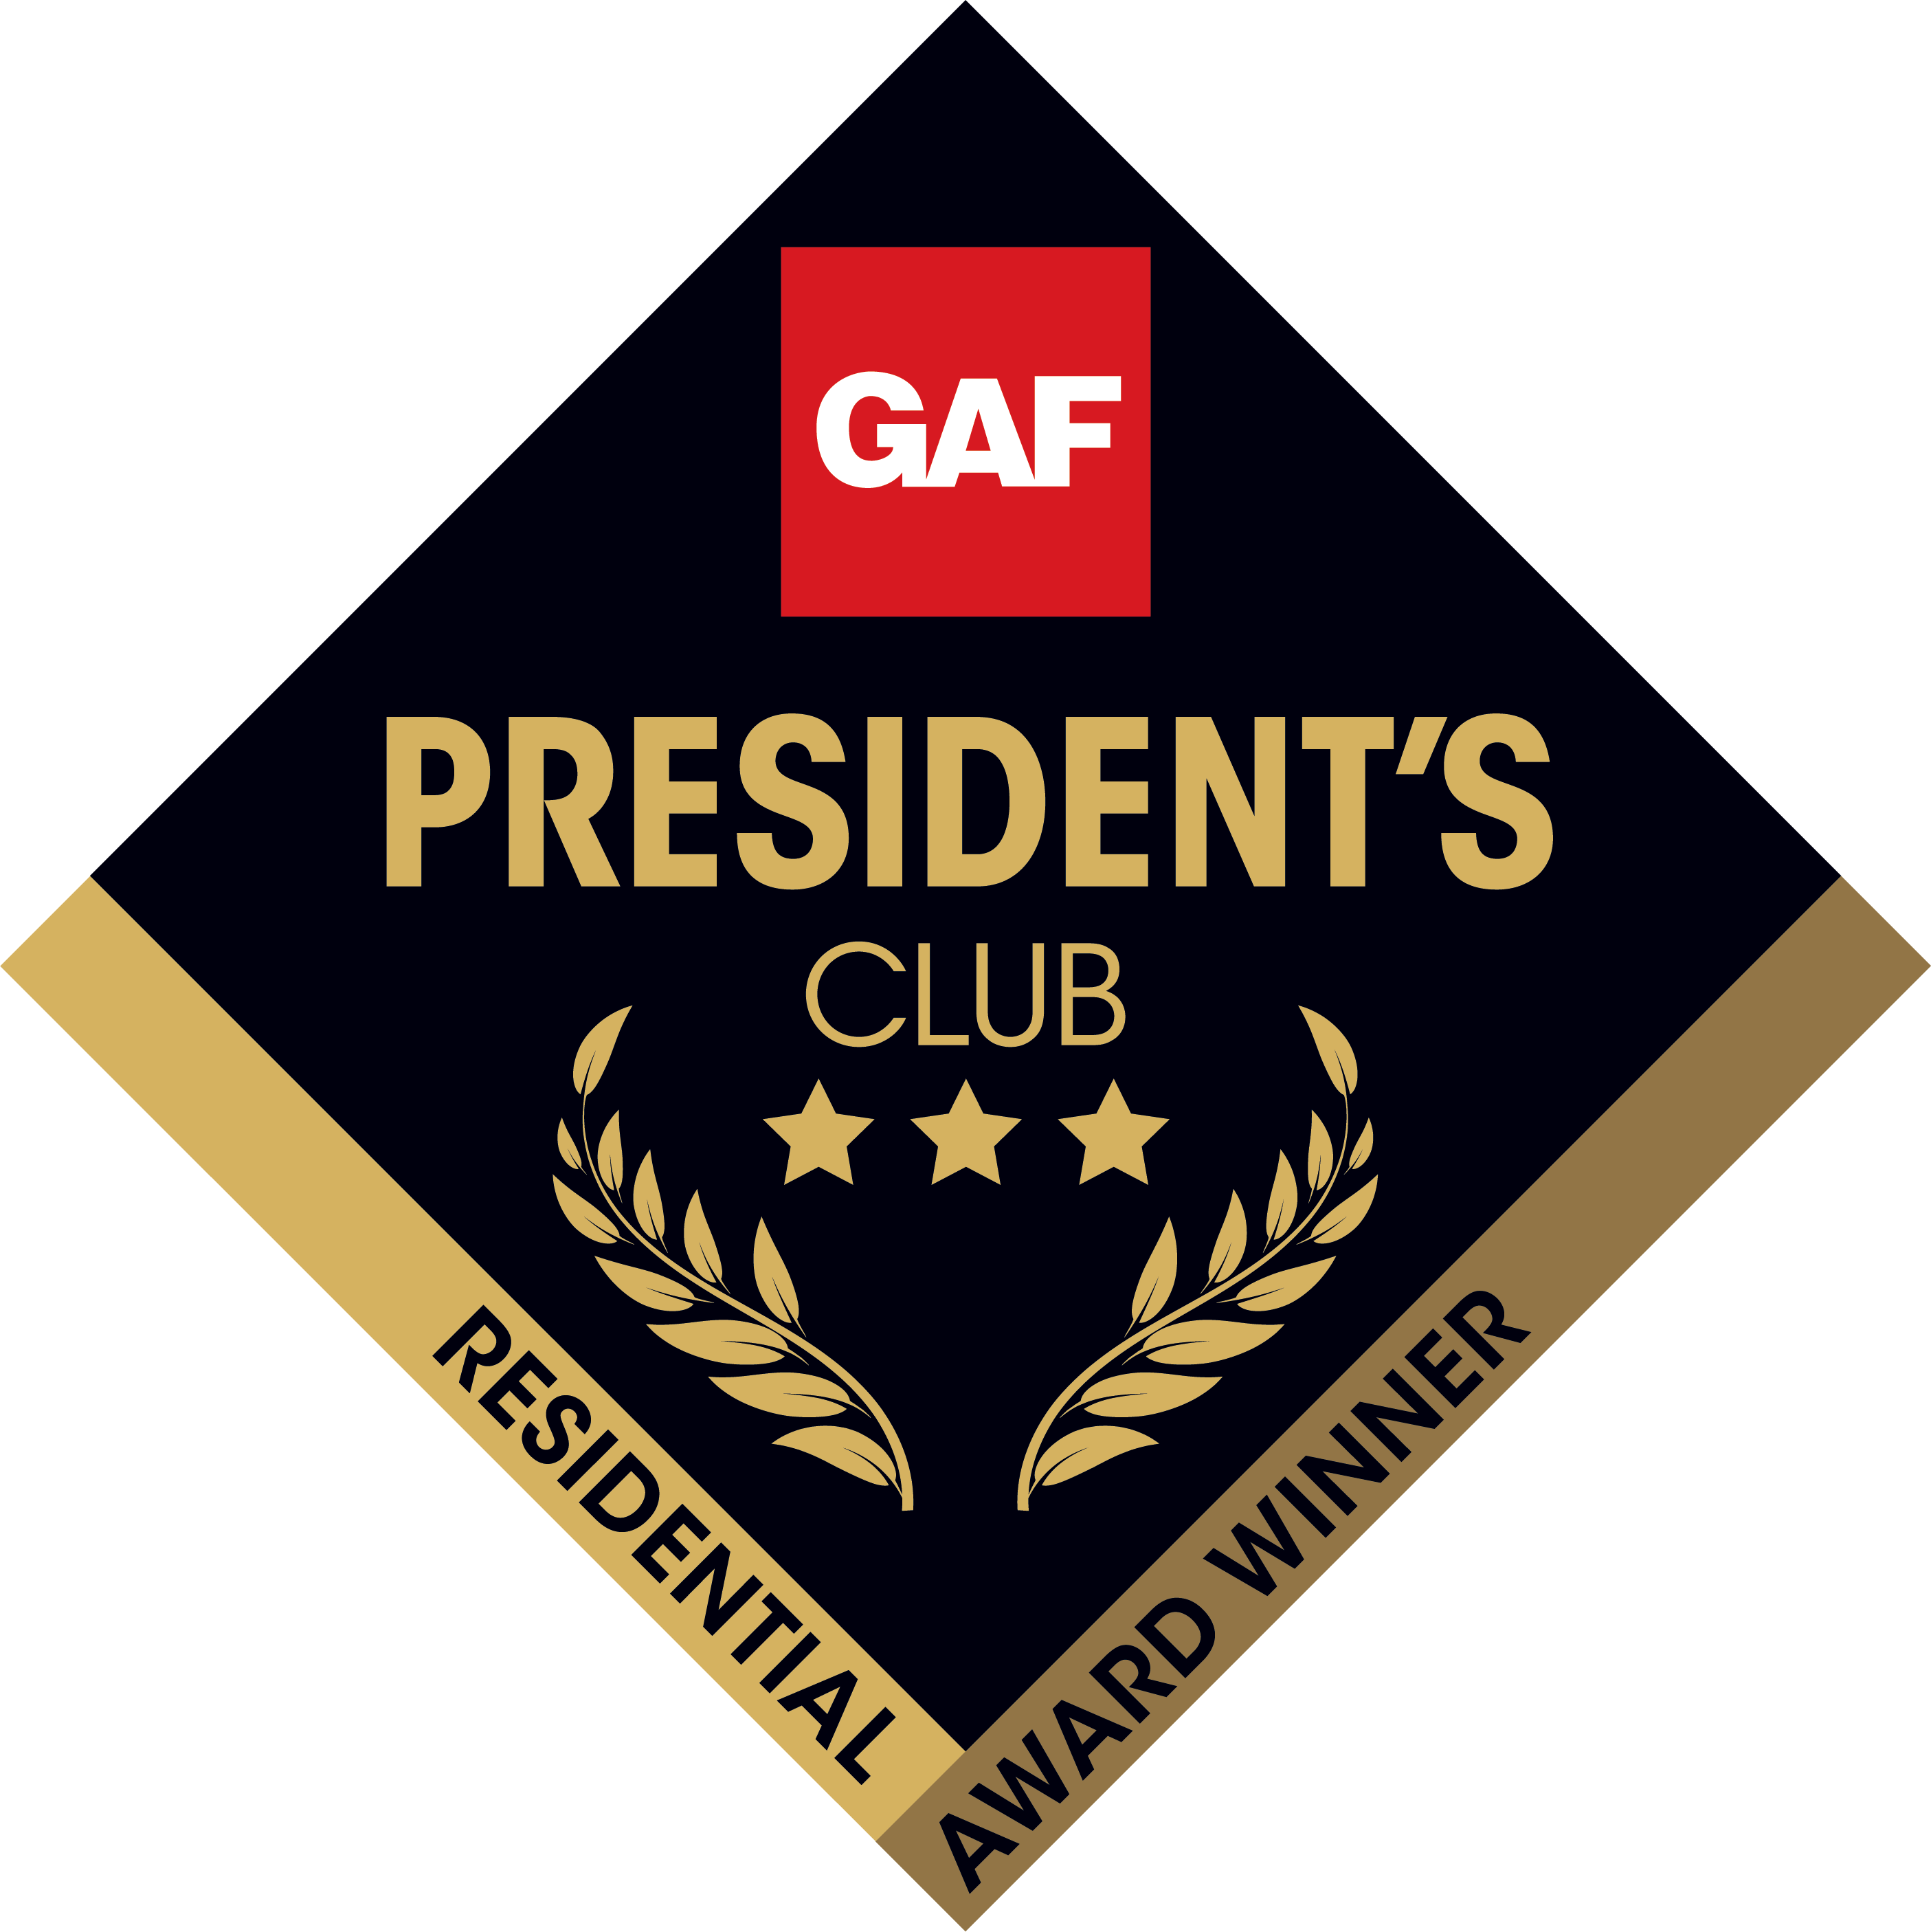 GAF president's club winner